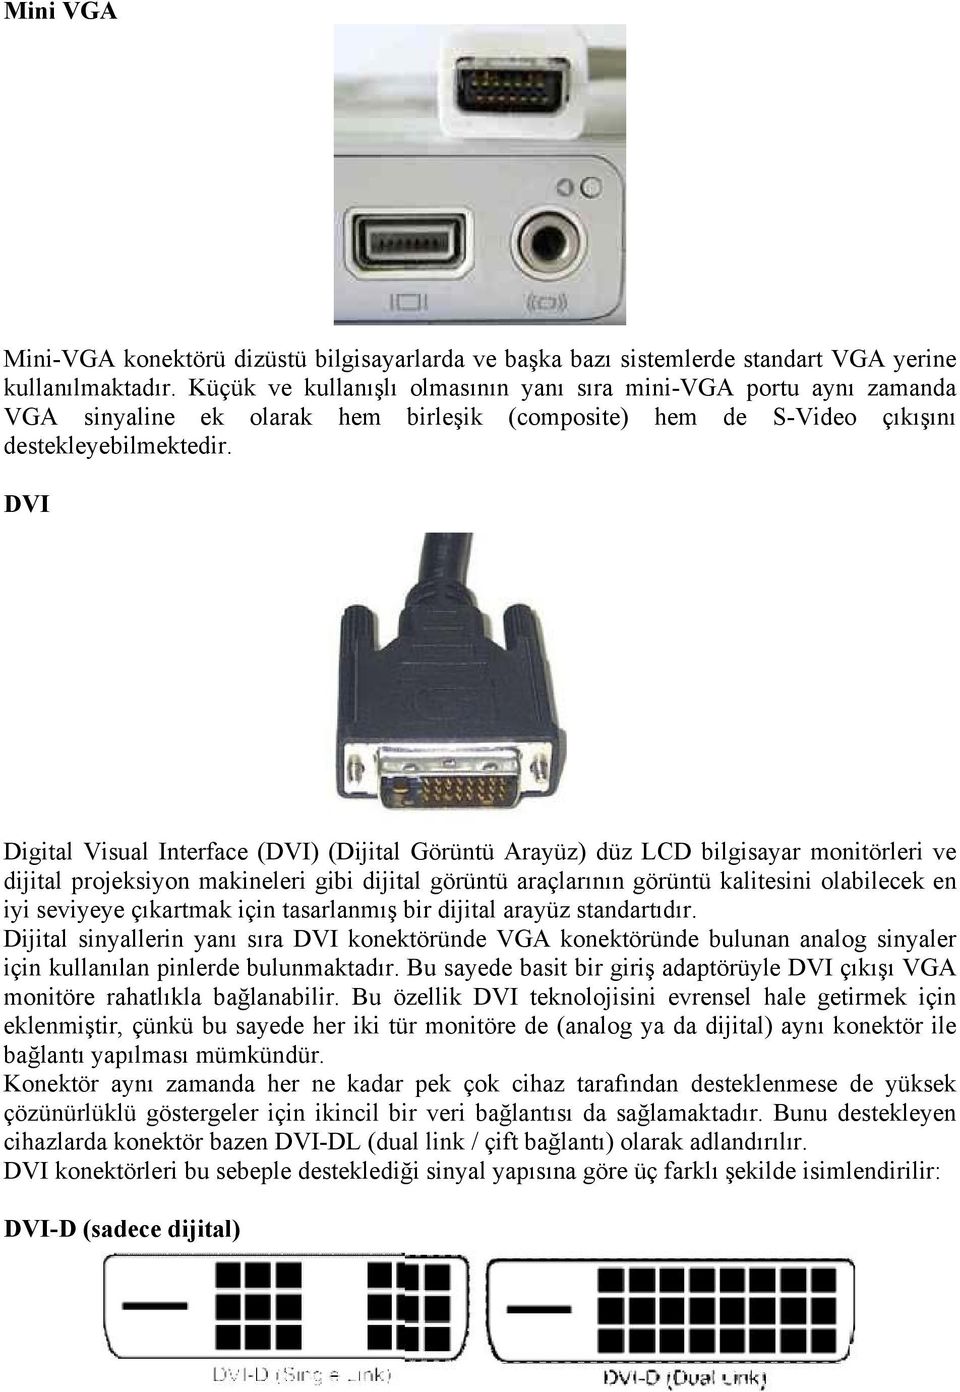 DVI Digital Visual Interface (DVI) (Dijital Görüntü Arayüz) düz LCD bilgisayar monitörleri ve dijital projeksiyon makineleri gibi dijital görüntü araçlarının görüntü kalitesini olabilecek en iyi